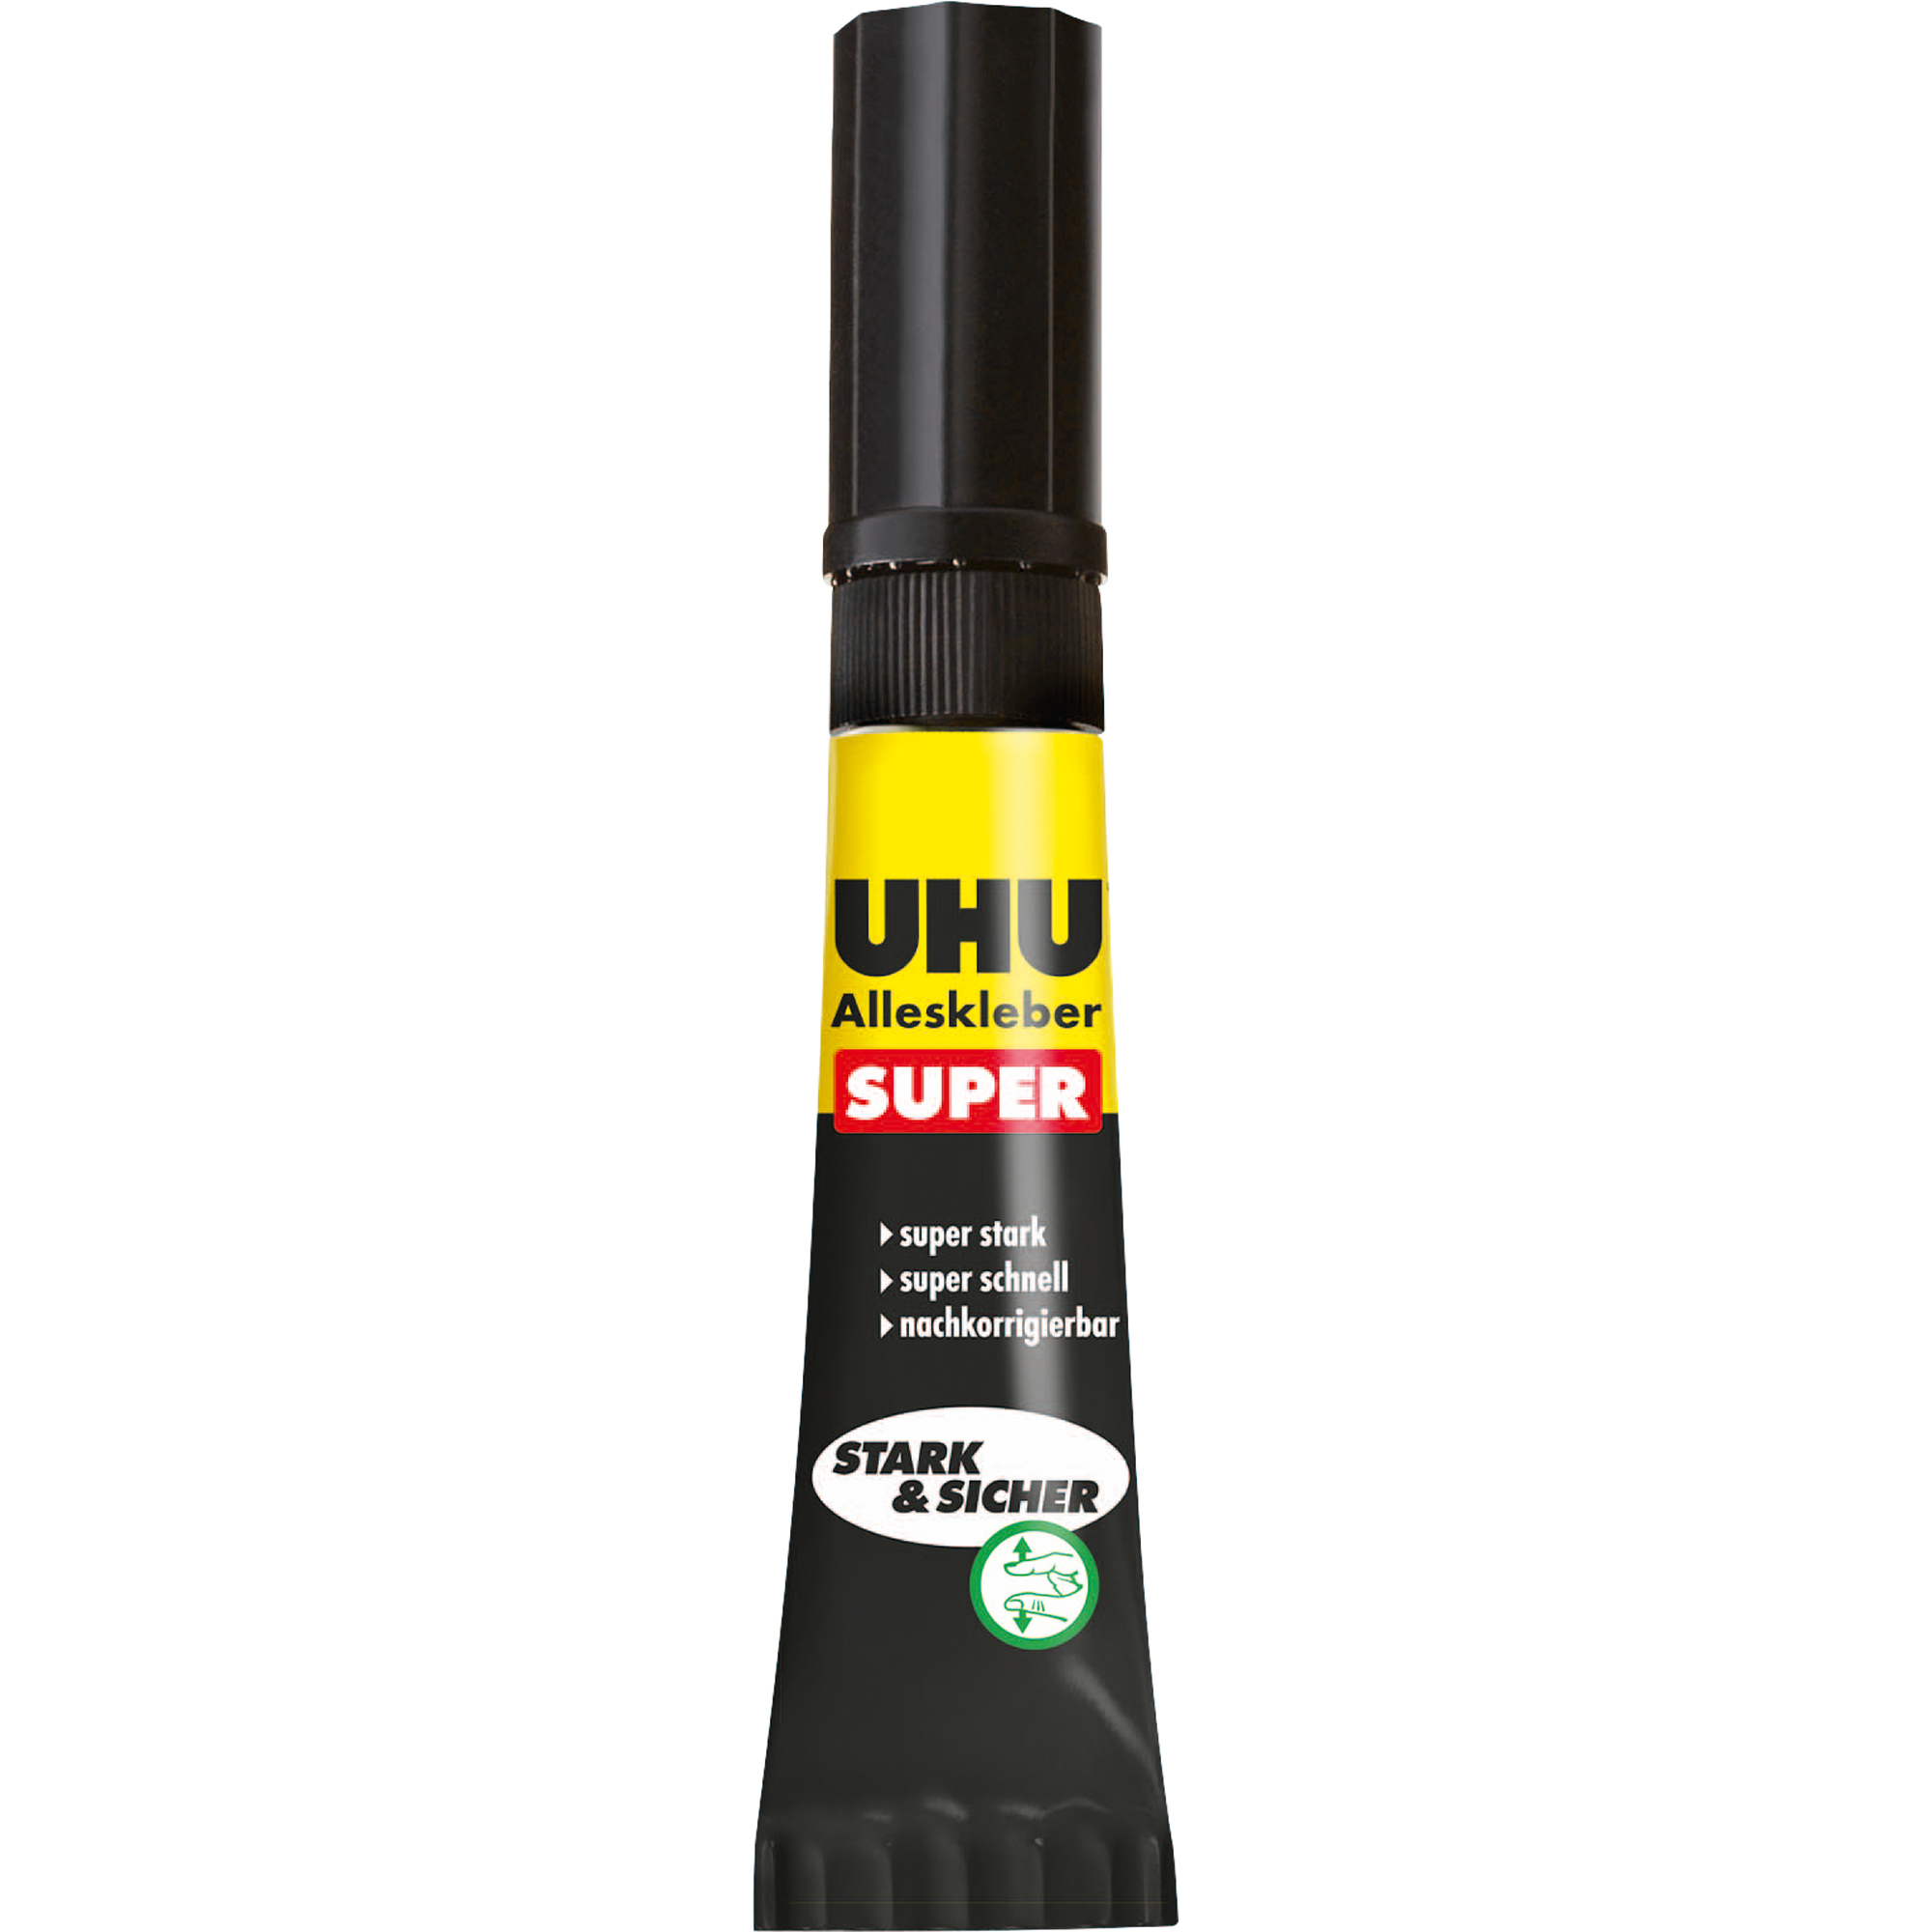 UHU® Alleskleber SUPER Strong & Safe